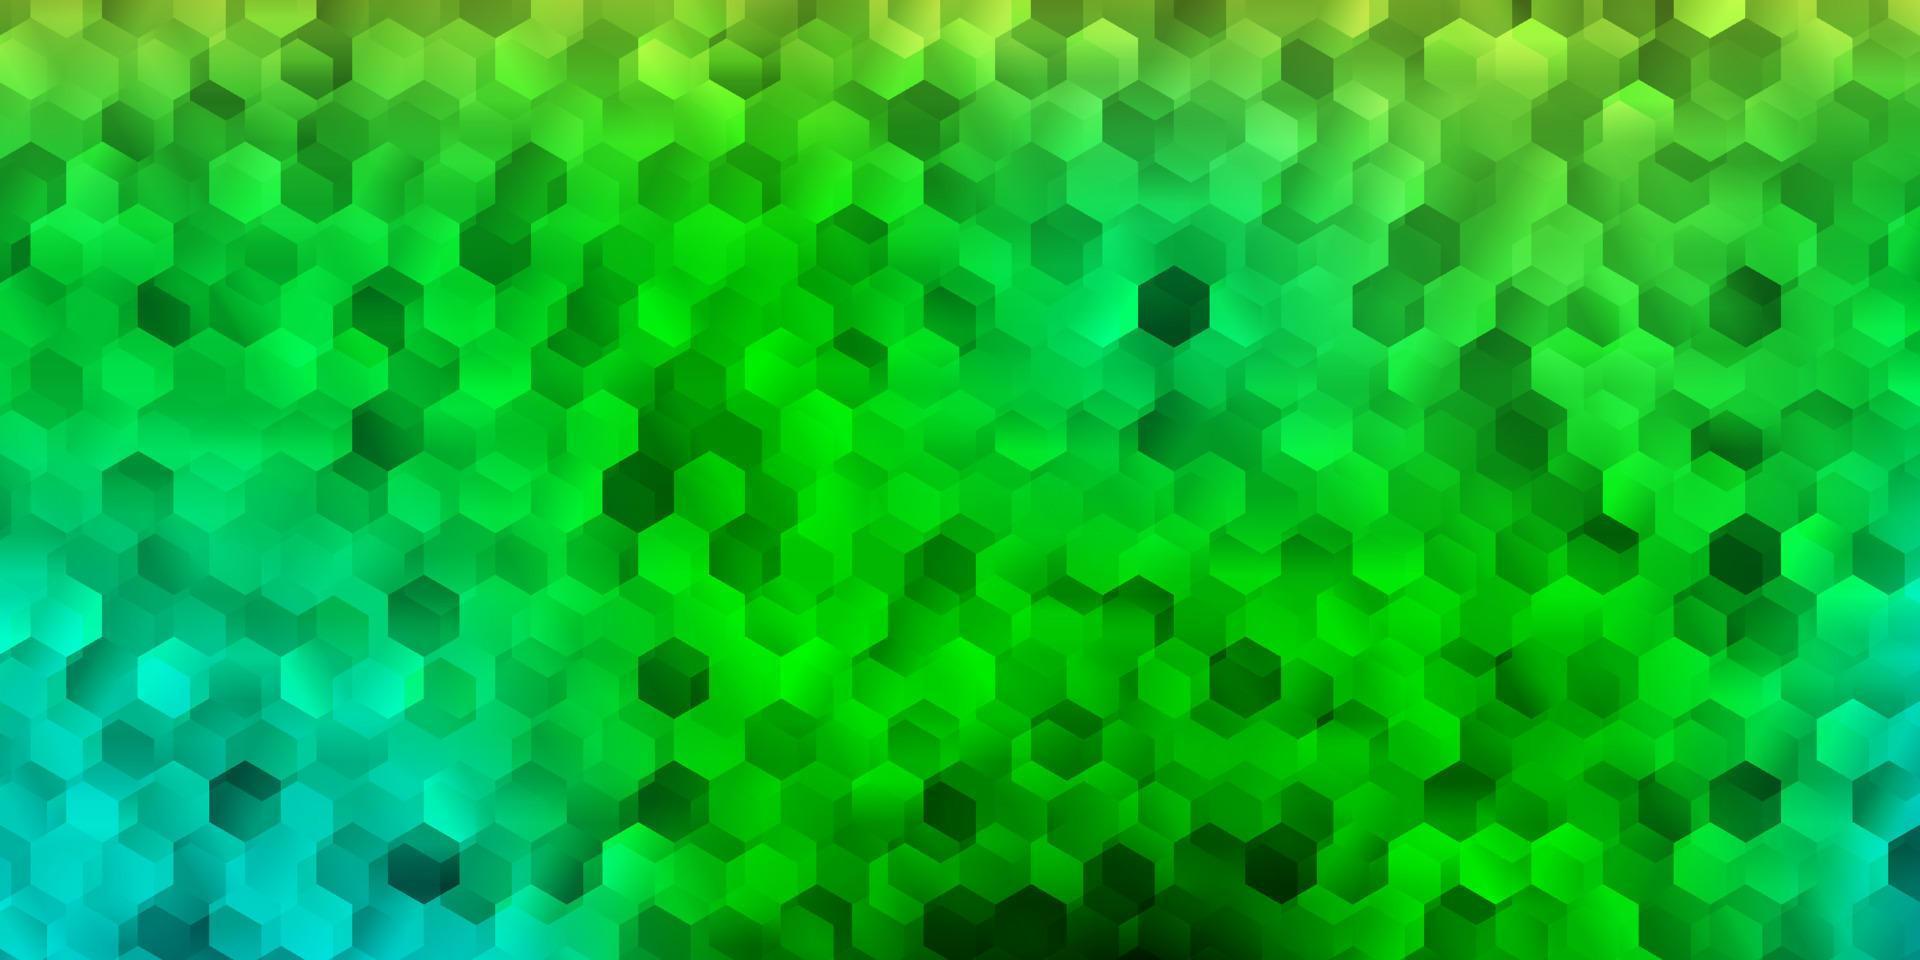 fundo vector azul, verde claro com formas hexagonais.